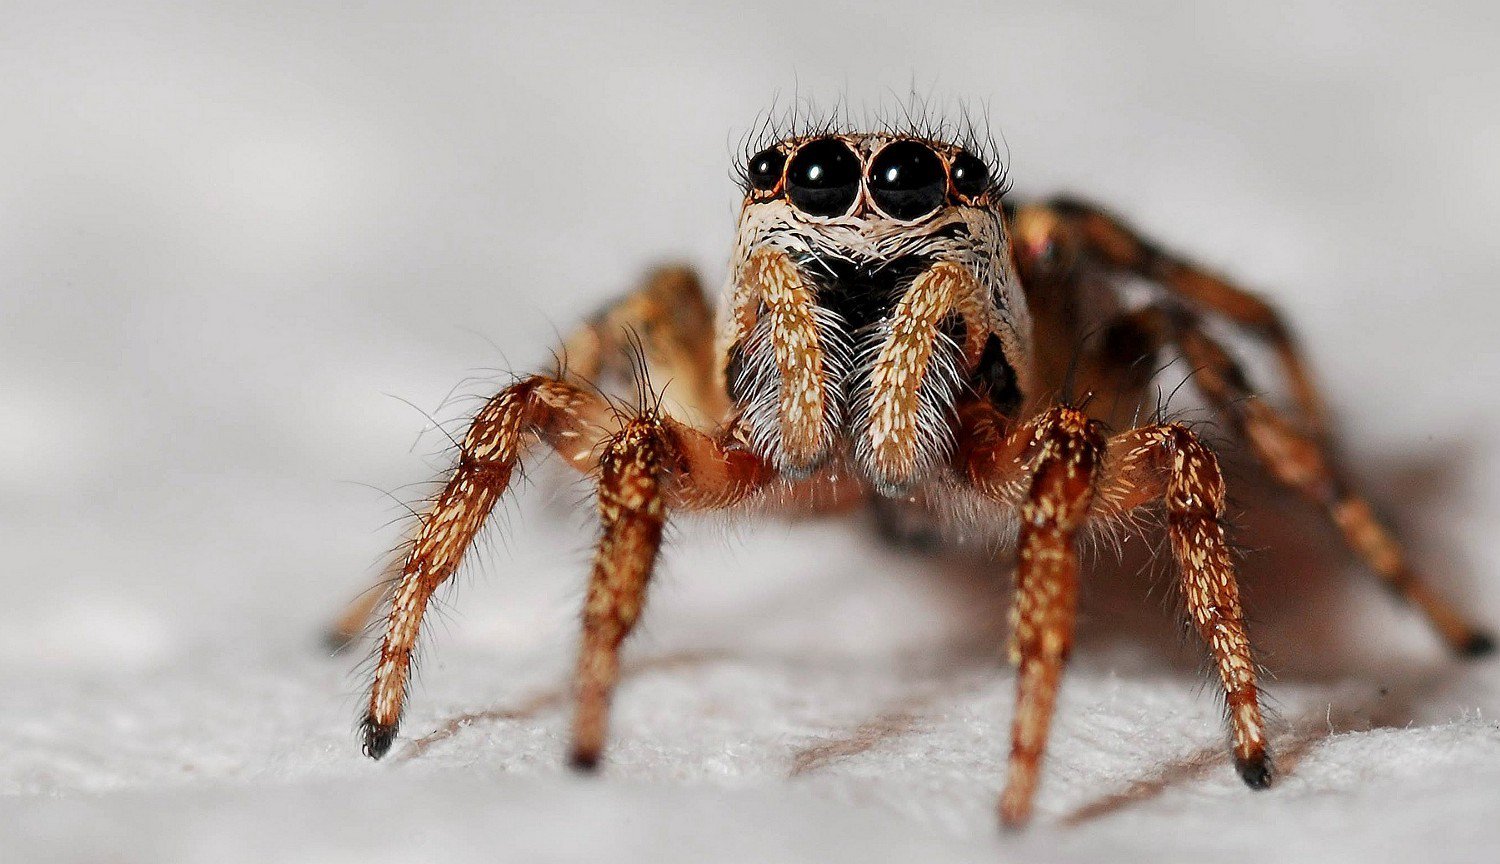 Versteinerte Spinne in der Lage, glänzen die Augen auch nach Millionen von Jahren